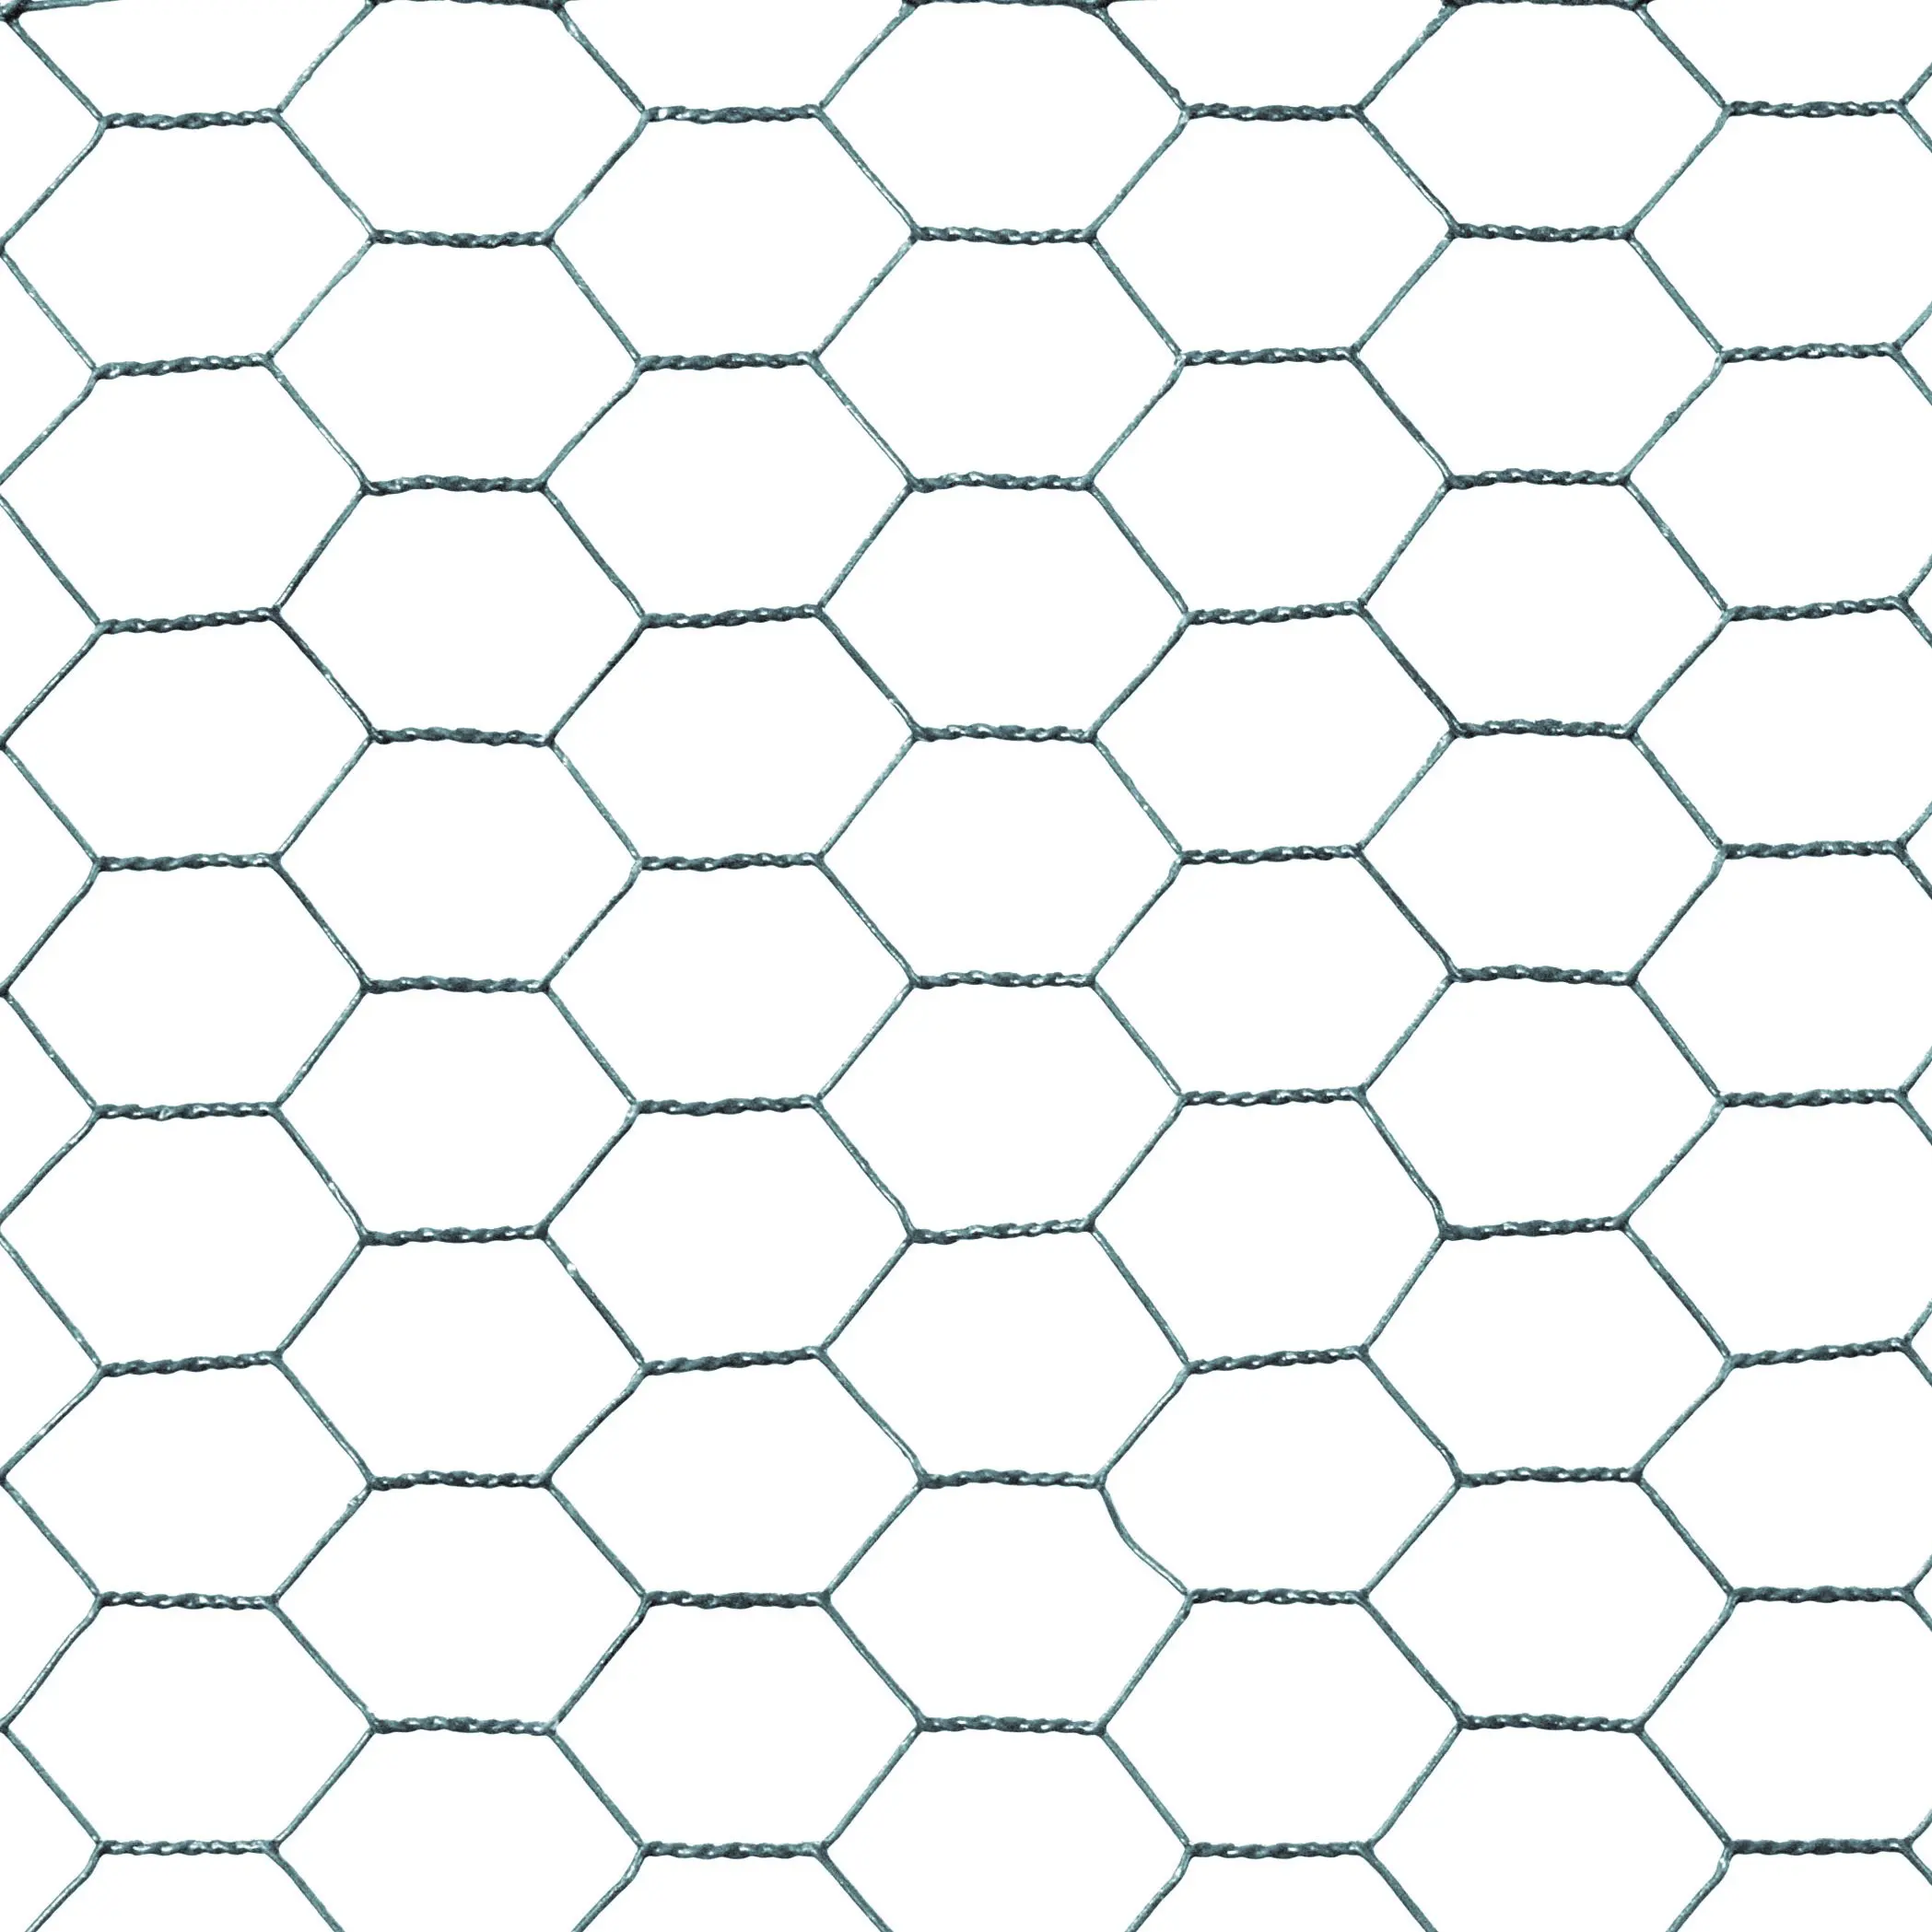 Malla de alambre hexagonal de pet, muro de retención galvanizado recubierto de pvc, en venta